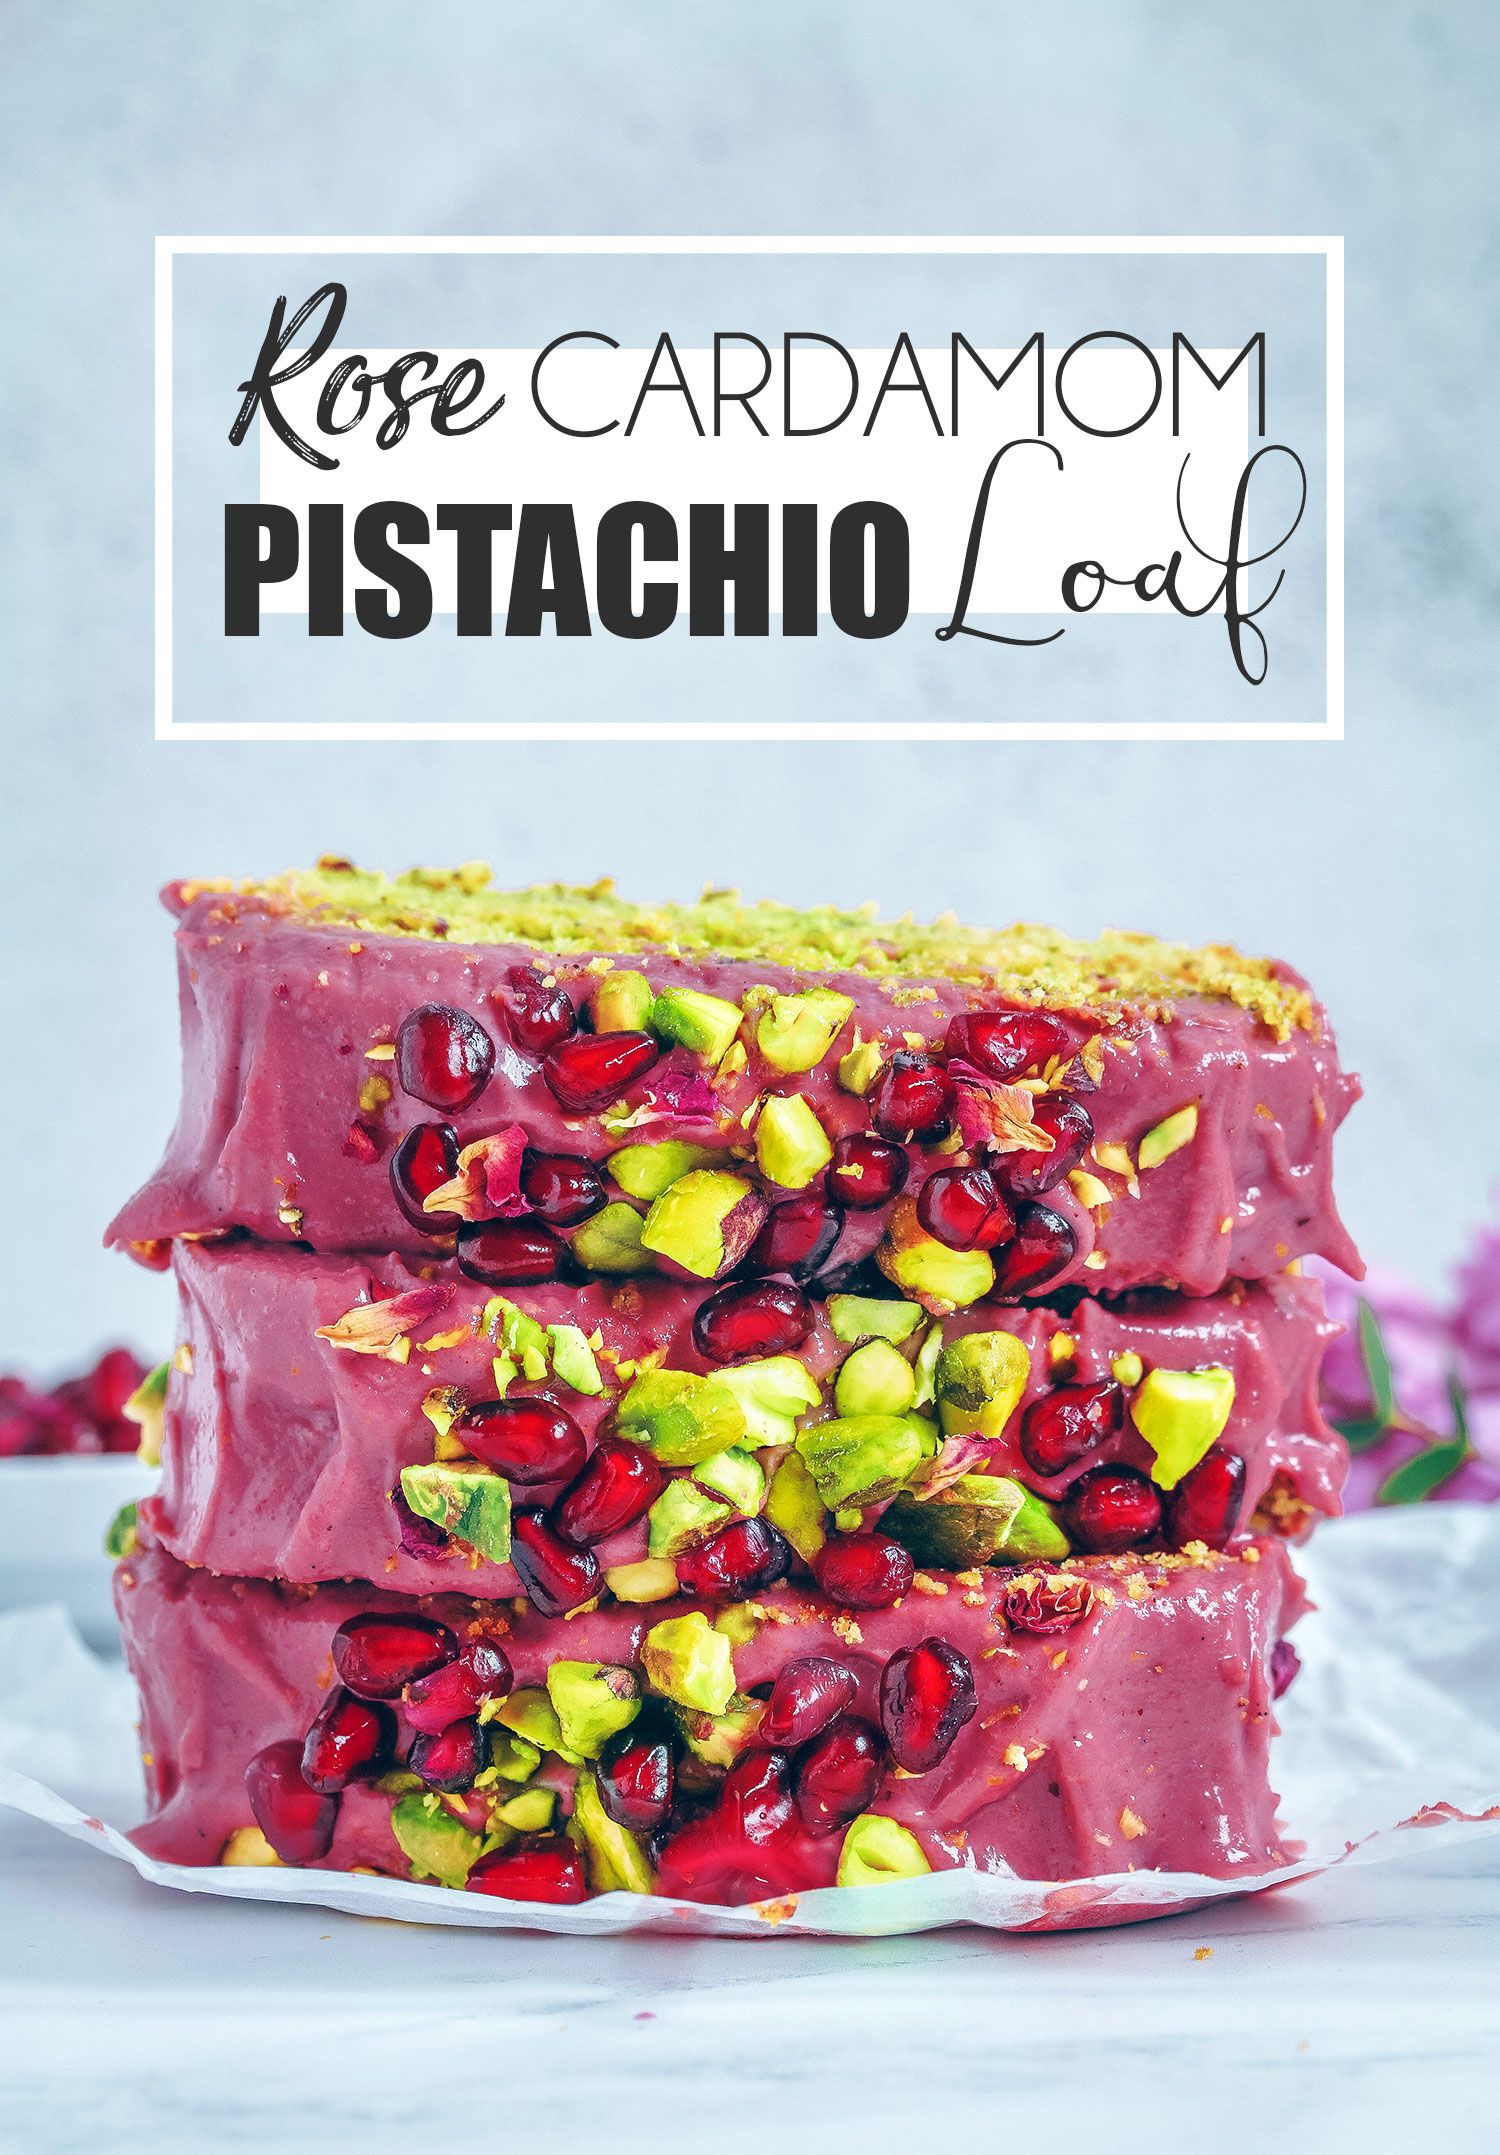 Cardamom Pistachio Cake - Waiting for Blancmange